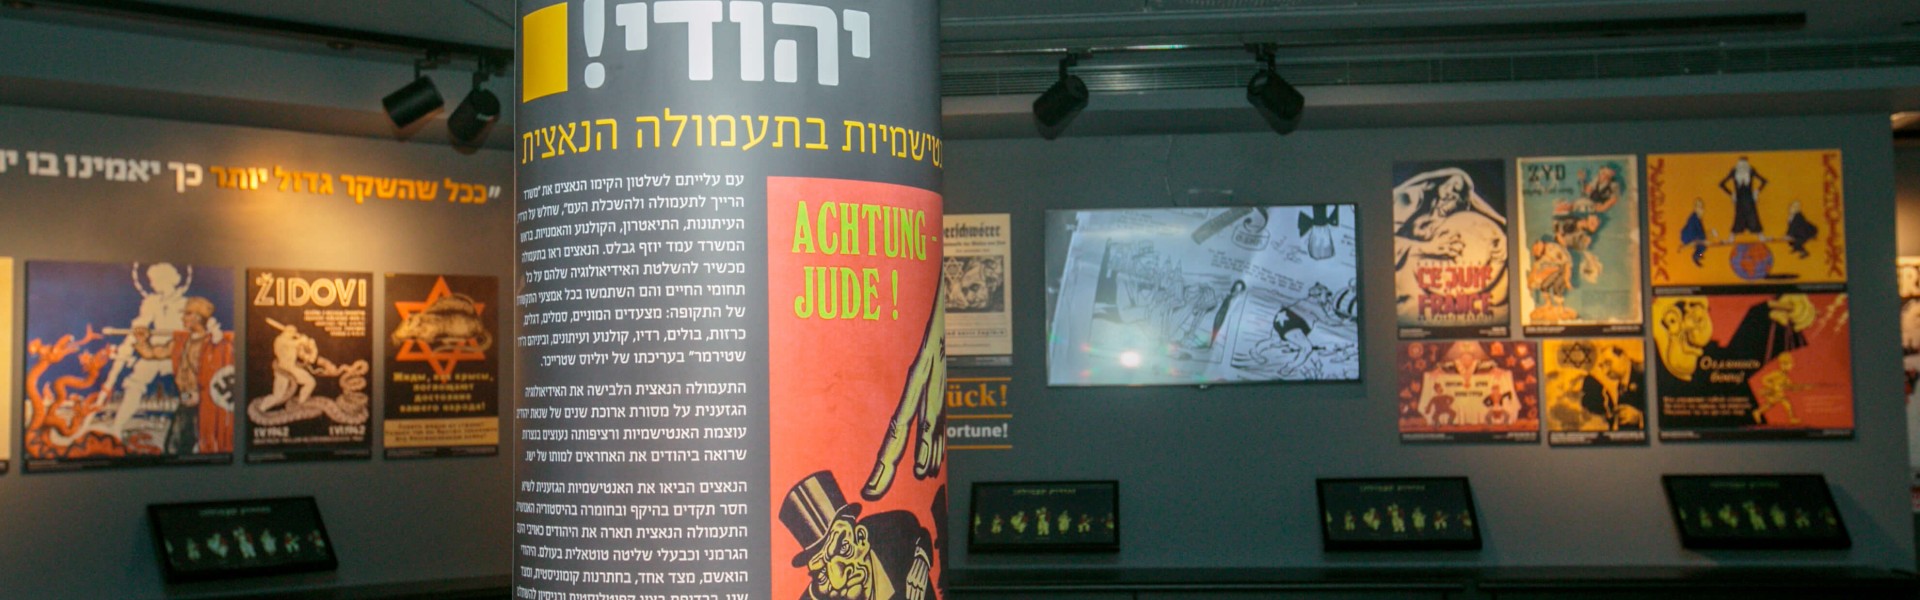 תערוכת האנטישמיות בתעמולה הנאצית במוזיאון משואה